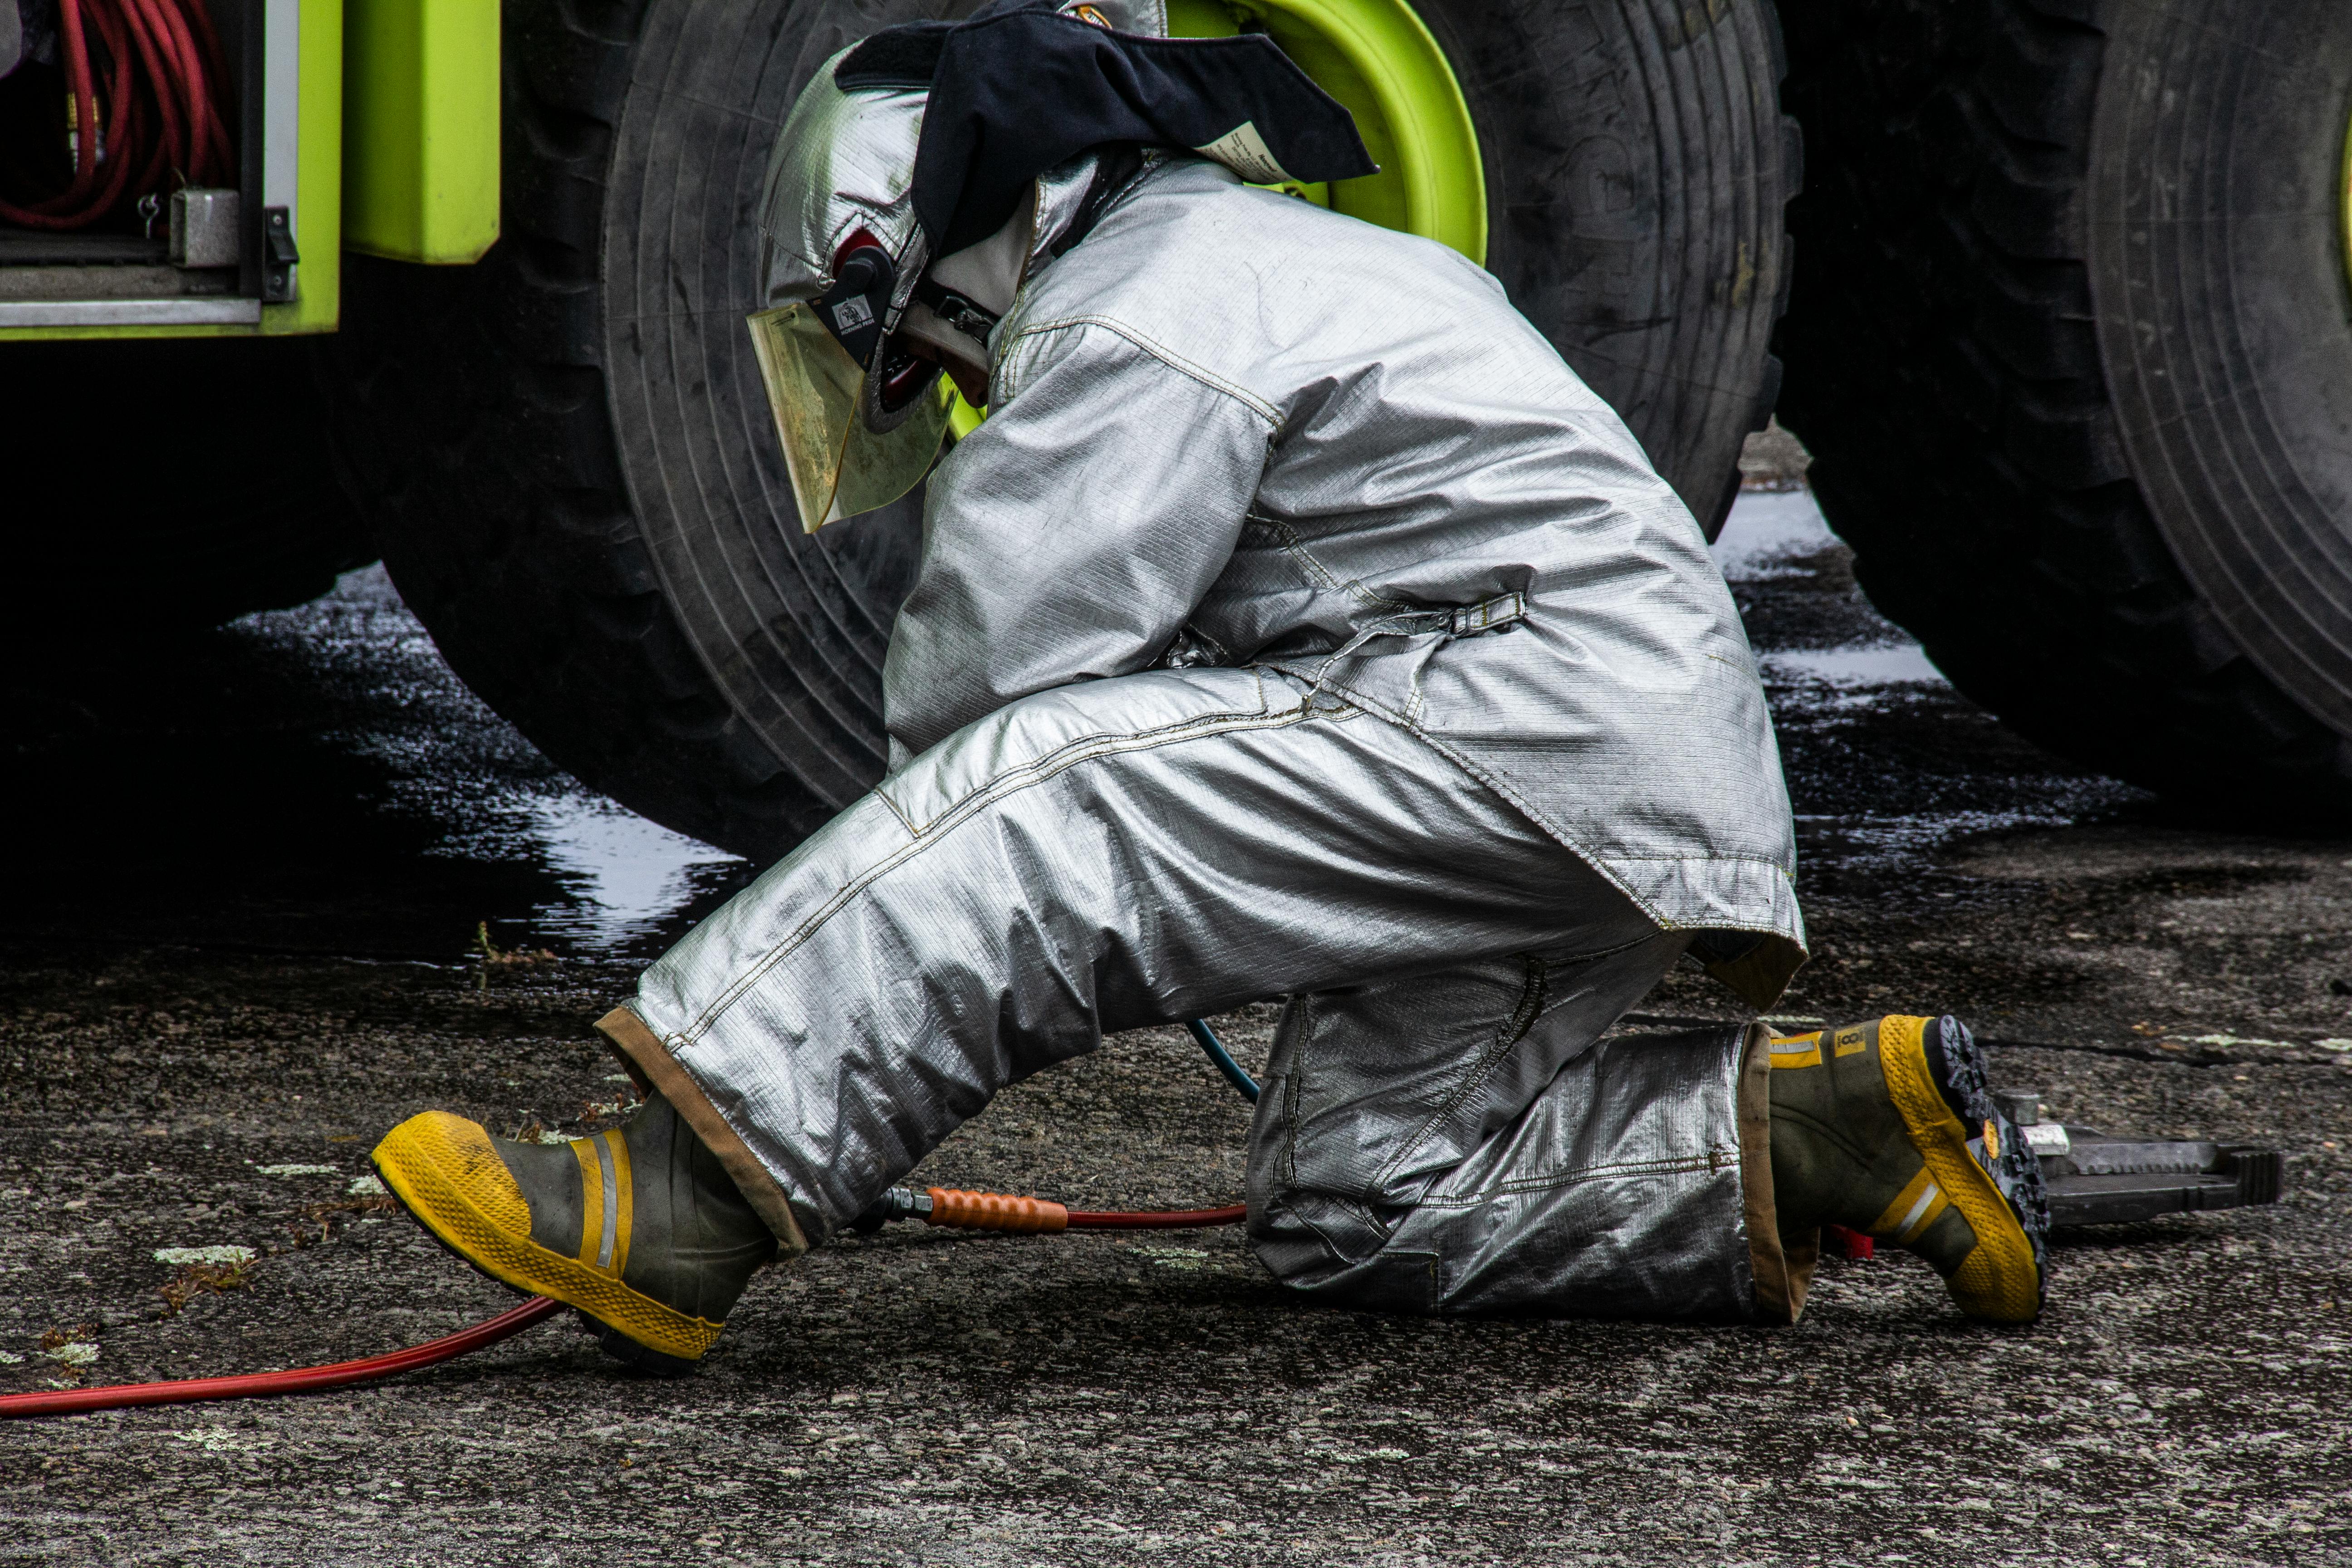 Buty strażackie bojowe - jakie standardy muszą spełniać?